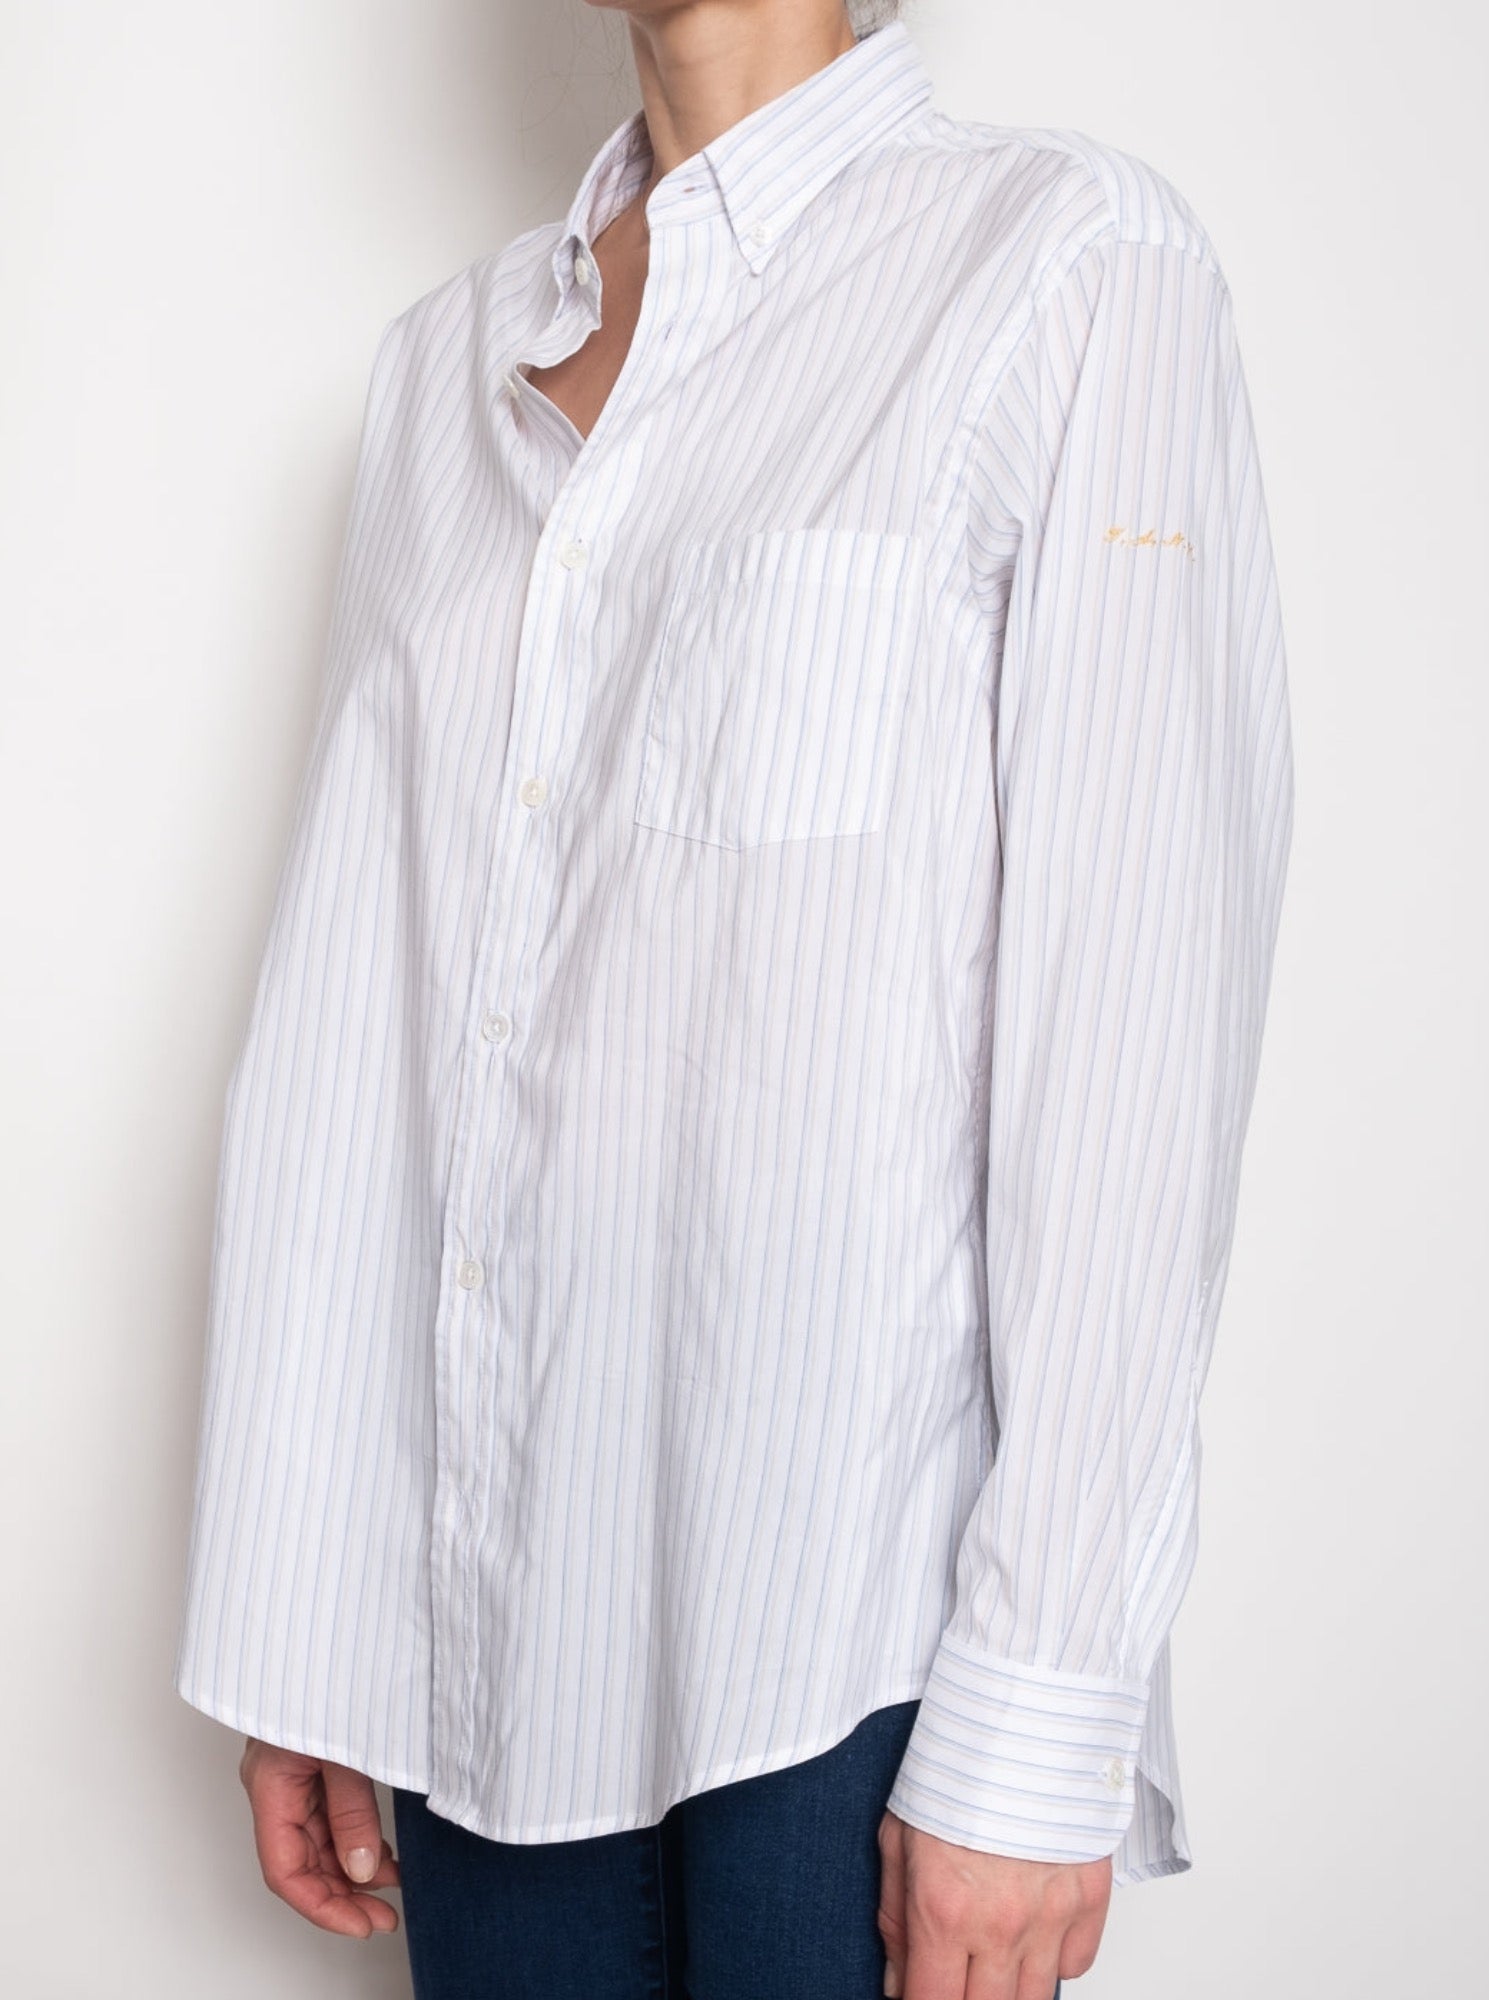 Standard Button Down Shirt in White and Mustard Stripe | Auralie